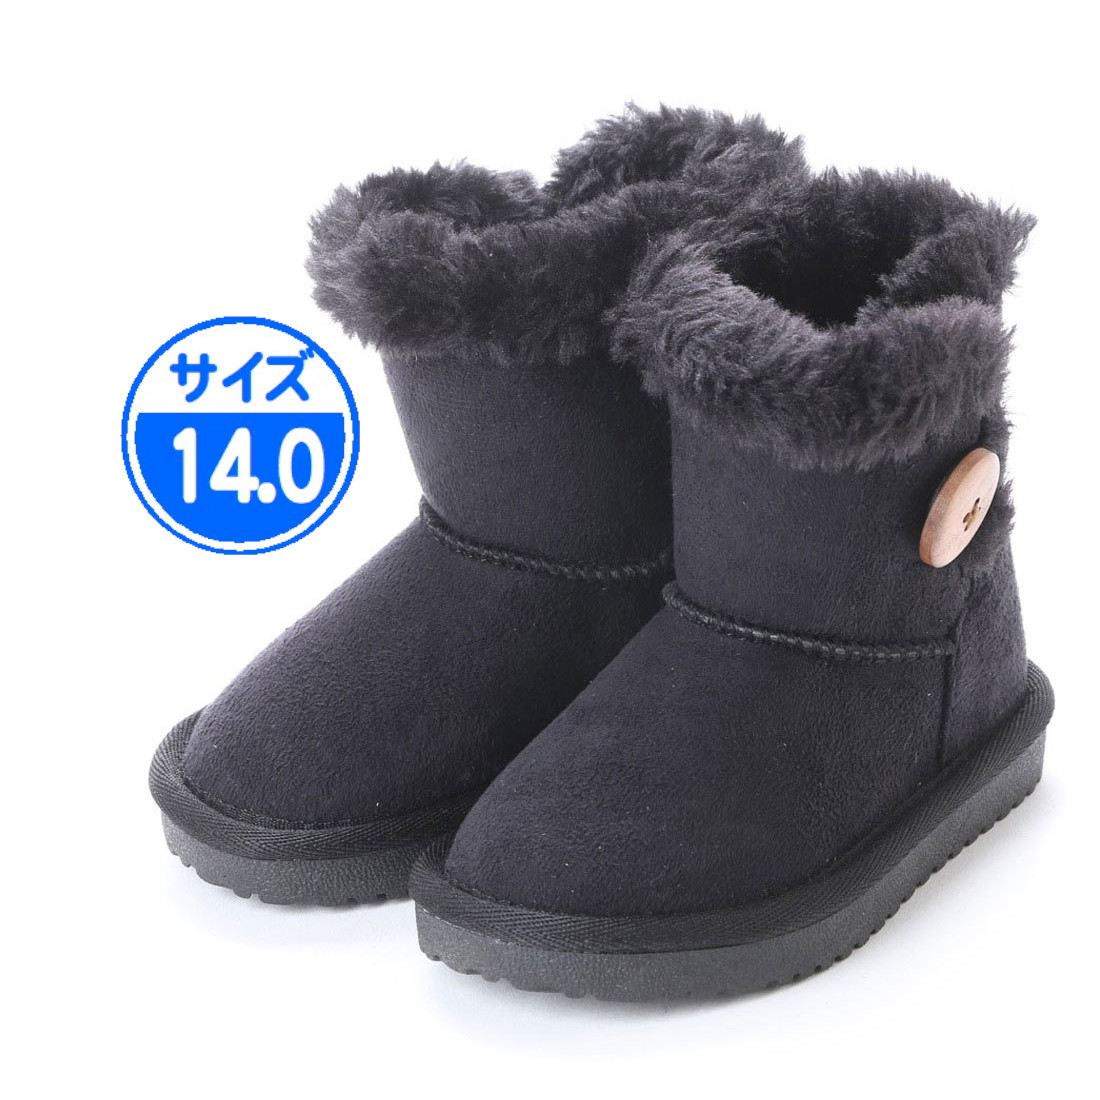 [ новый товар не использовался ] детский защищающий от холода ботинки мутон способ 14.0cm чёрный R45751